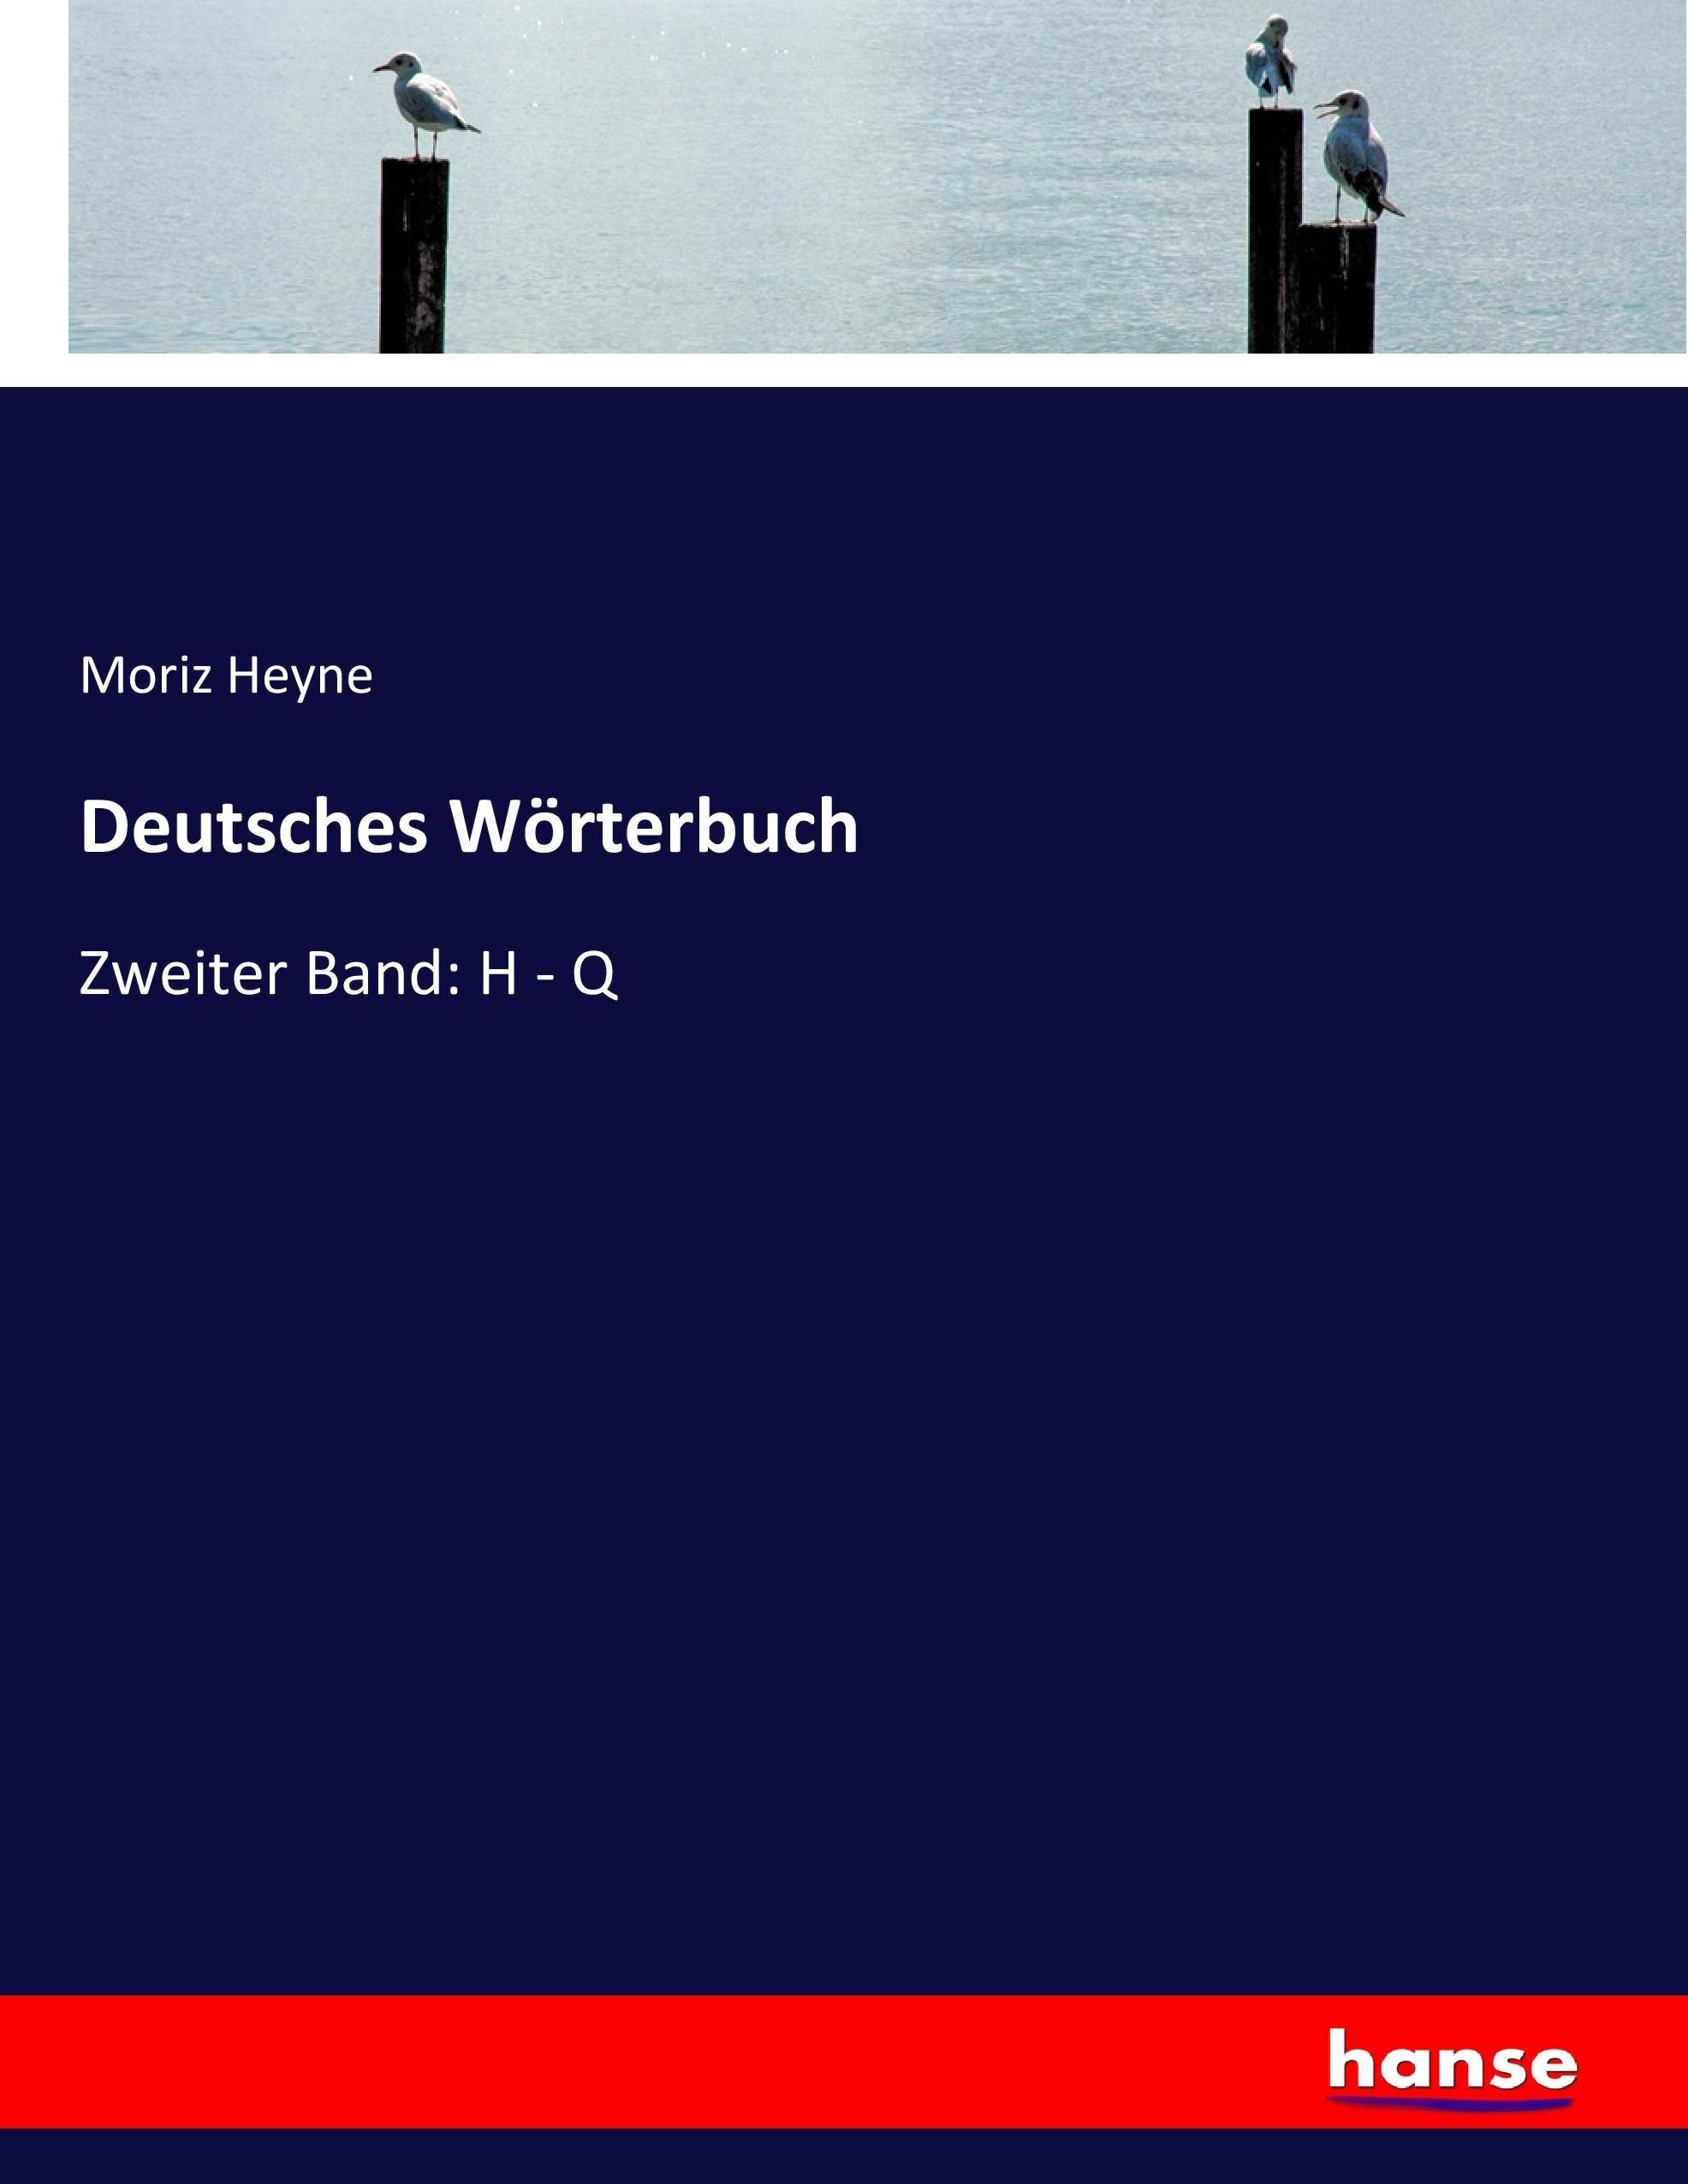 Deutsches Wörterbuch | Zweiter Band: H - Q | Moriz Heyne | Taschenbuch | Paperback | 636 S. | Deutsch | 2017 | hansebooks | EAN 9783743698949 - Heyne, Moriz